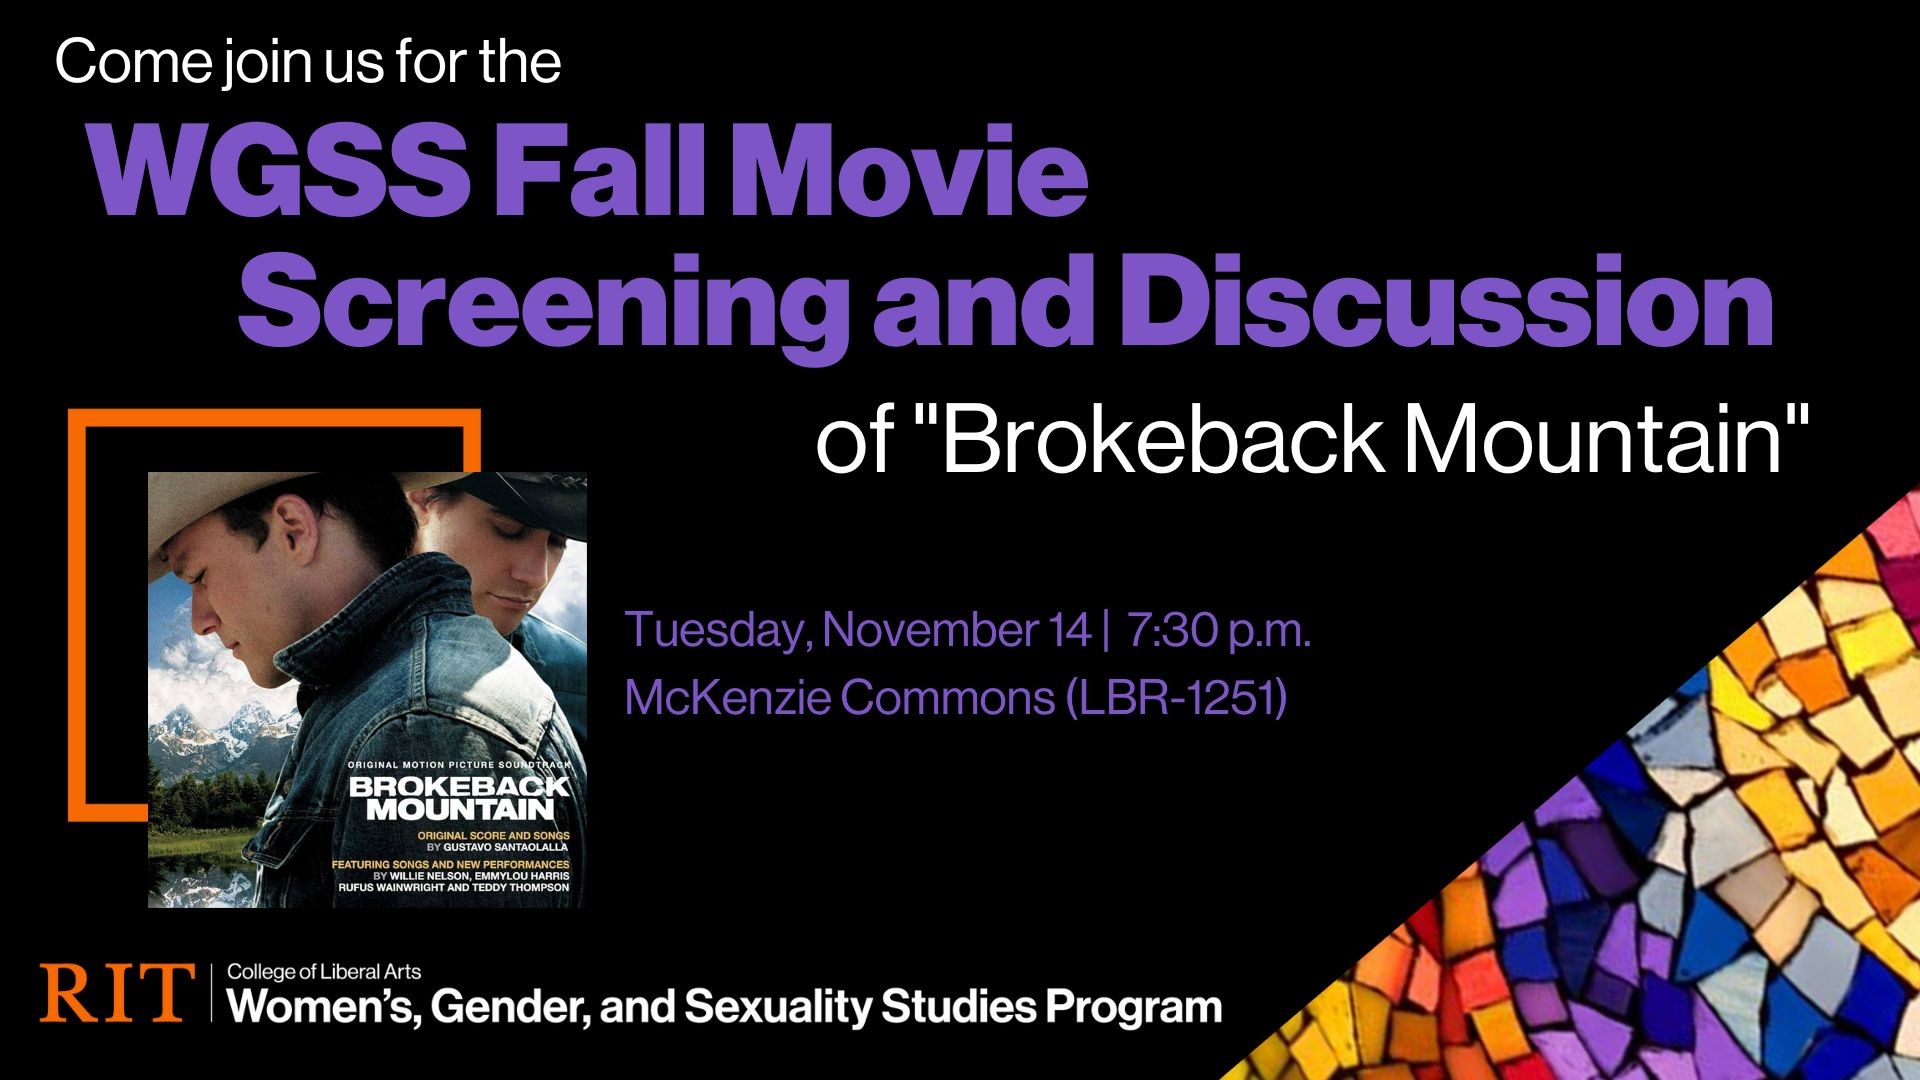 Brokeback Mountain image with text regarding the movie screening